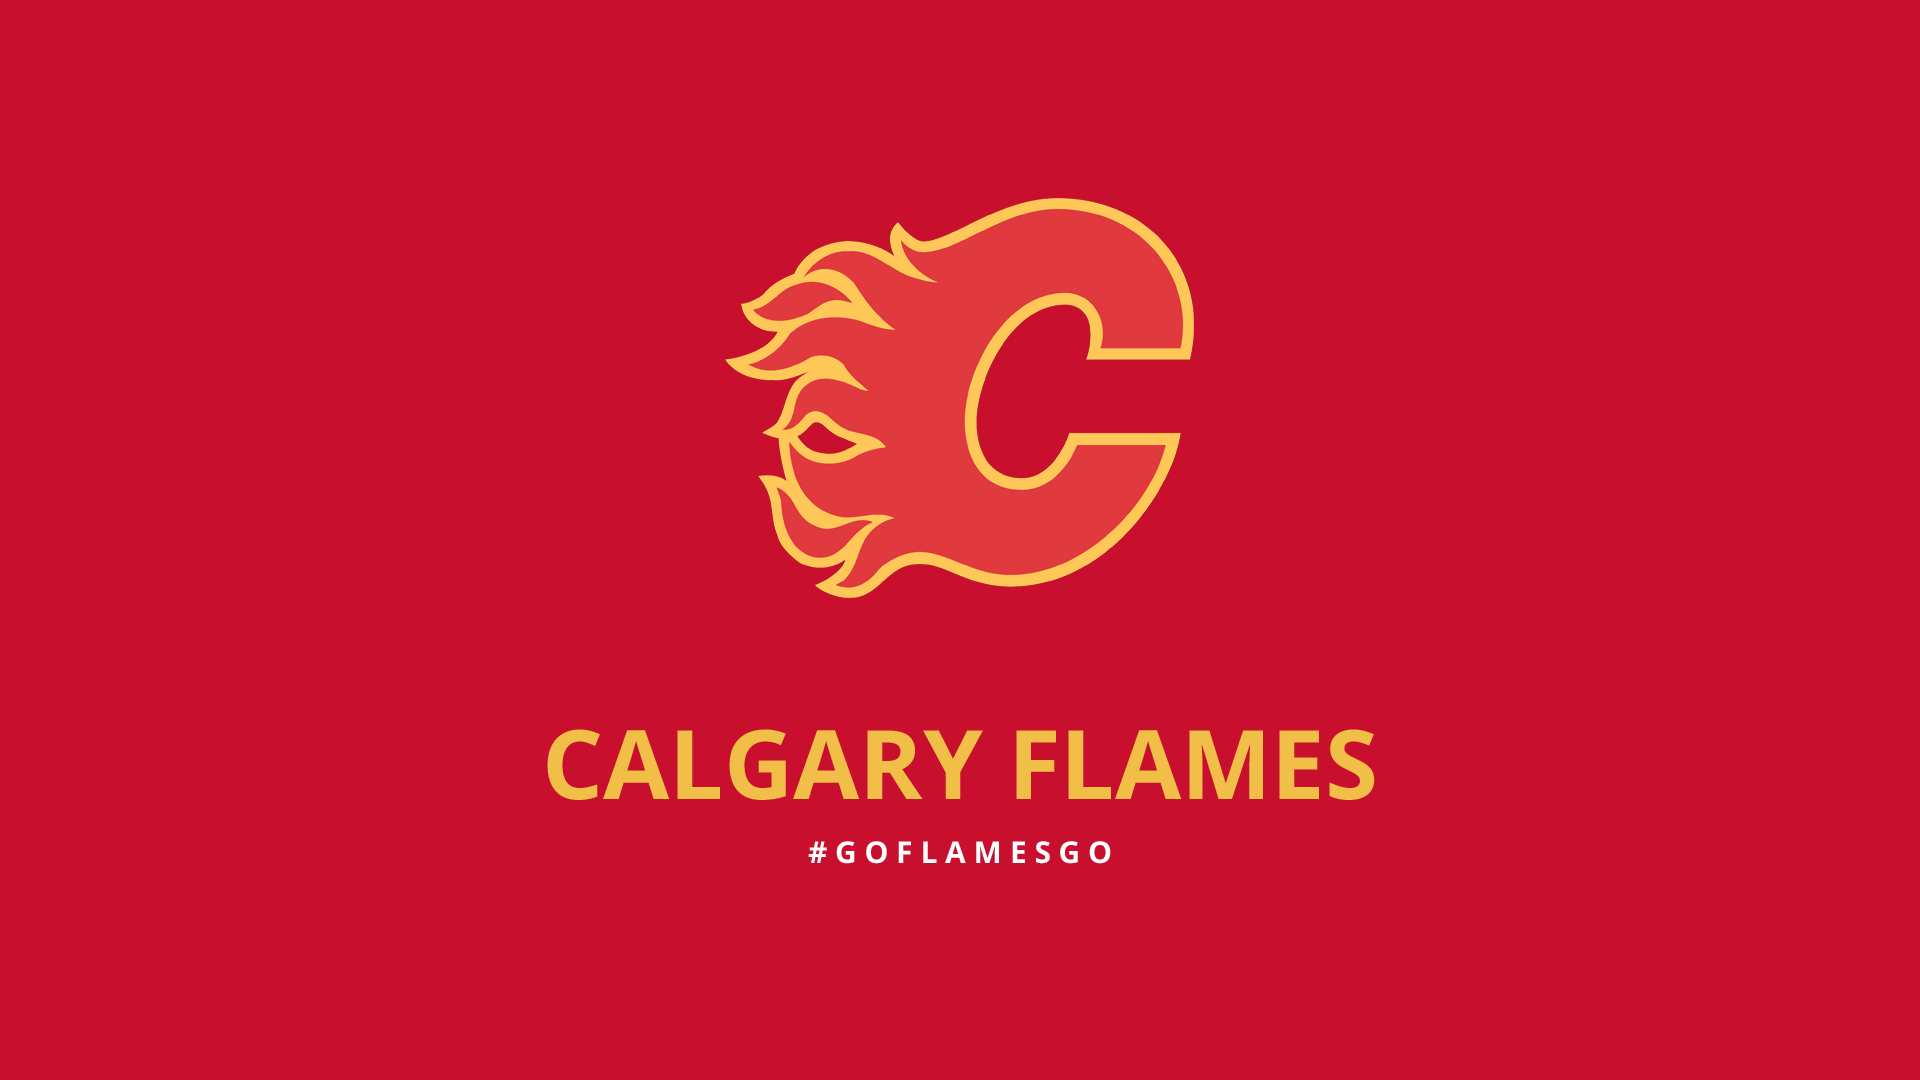 Calgary Flames Wallpaper 10   1920 X 1080 stmednet